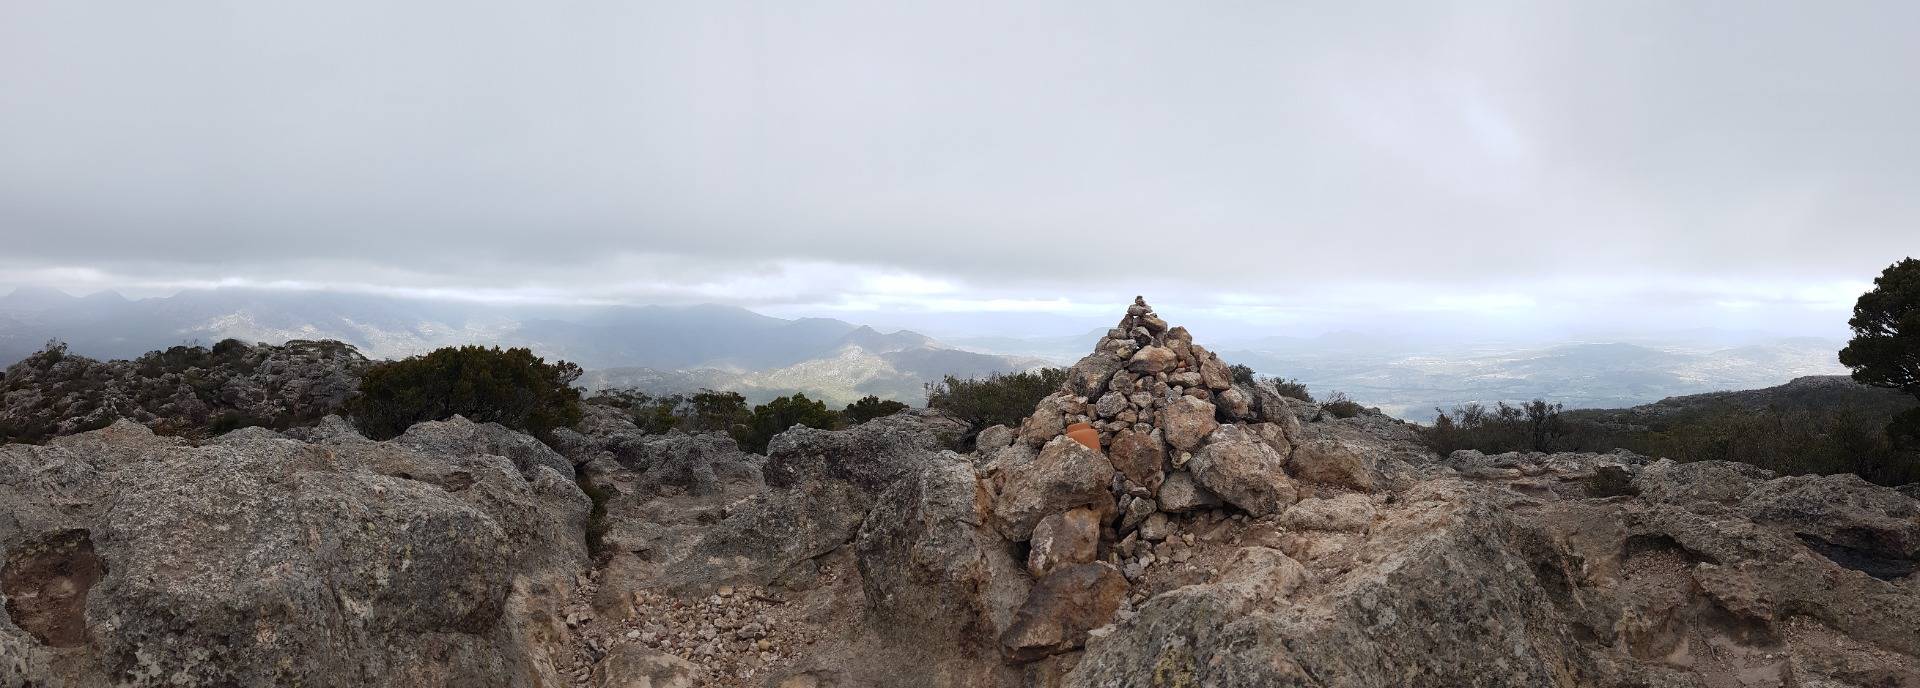 Mt Maroon Summit Hike - 8th Nov 2020